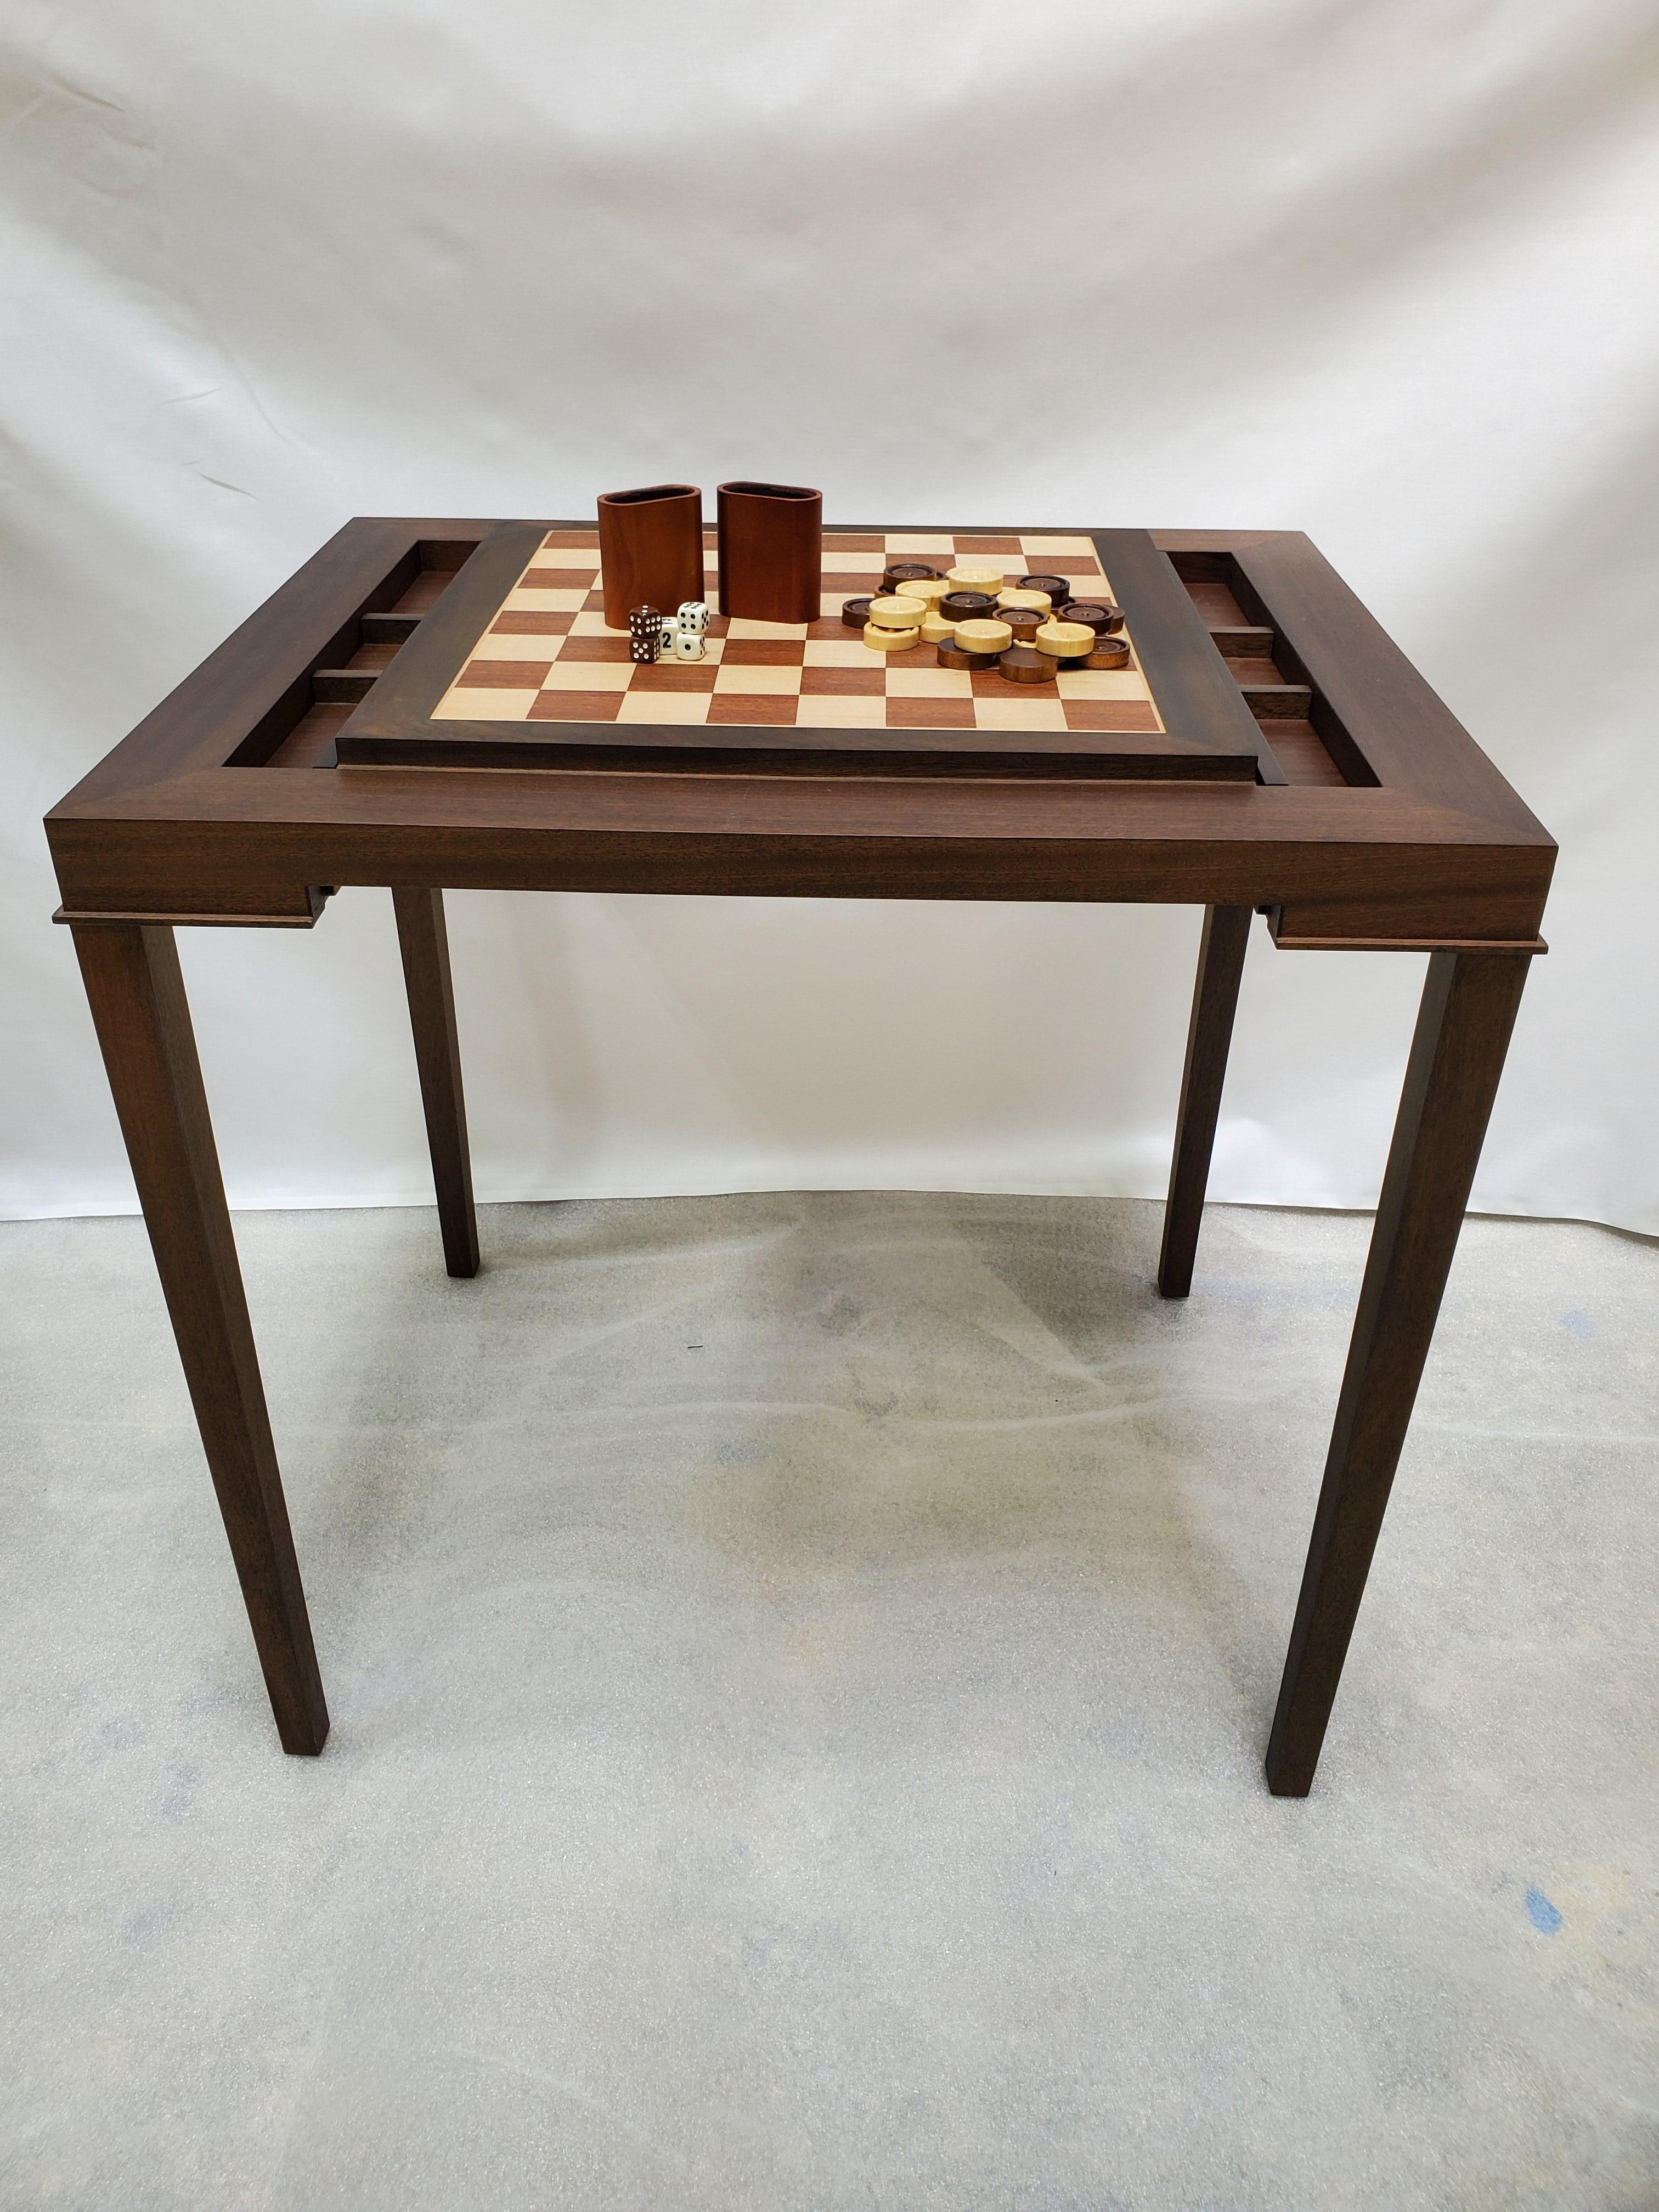 Table de backgammon sur mesure en noyer et acajou qui se transforme en table d'échecs grâce à un plateau coulissant.

Nouvelle production. Fabriqué sur commande en noyer et en acajou. Conçue et fabriquée à New York, chaque table est fabriquée à la